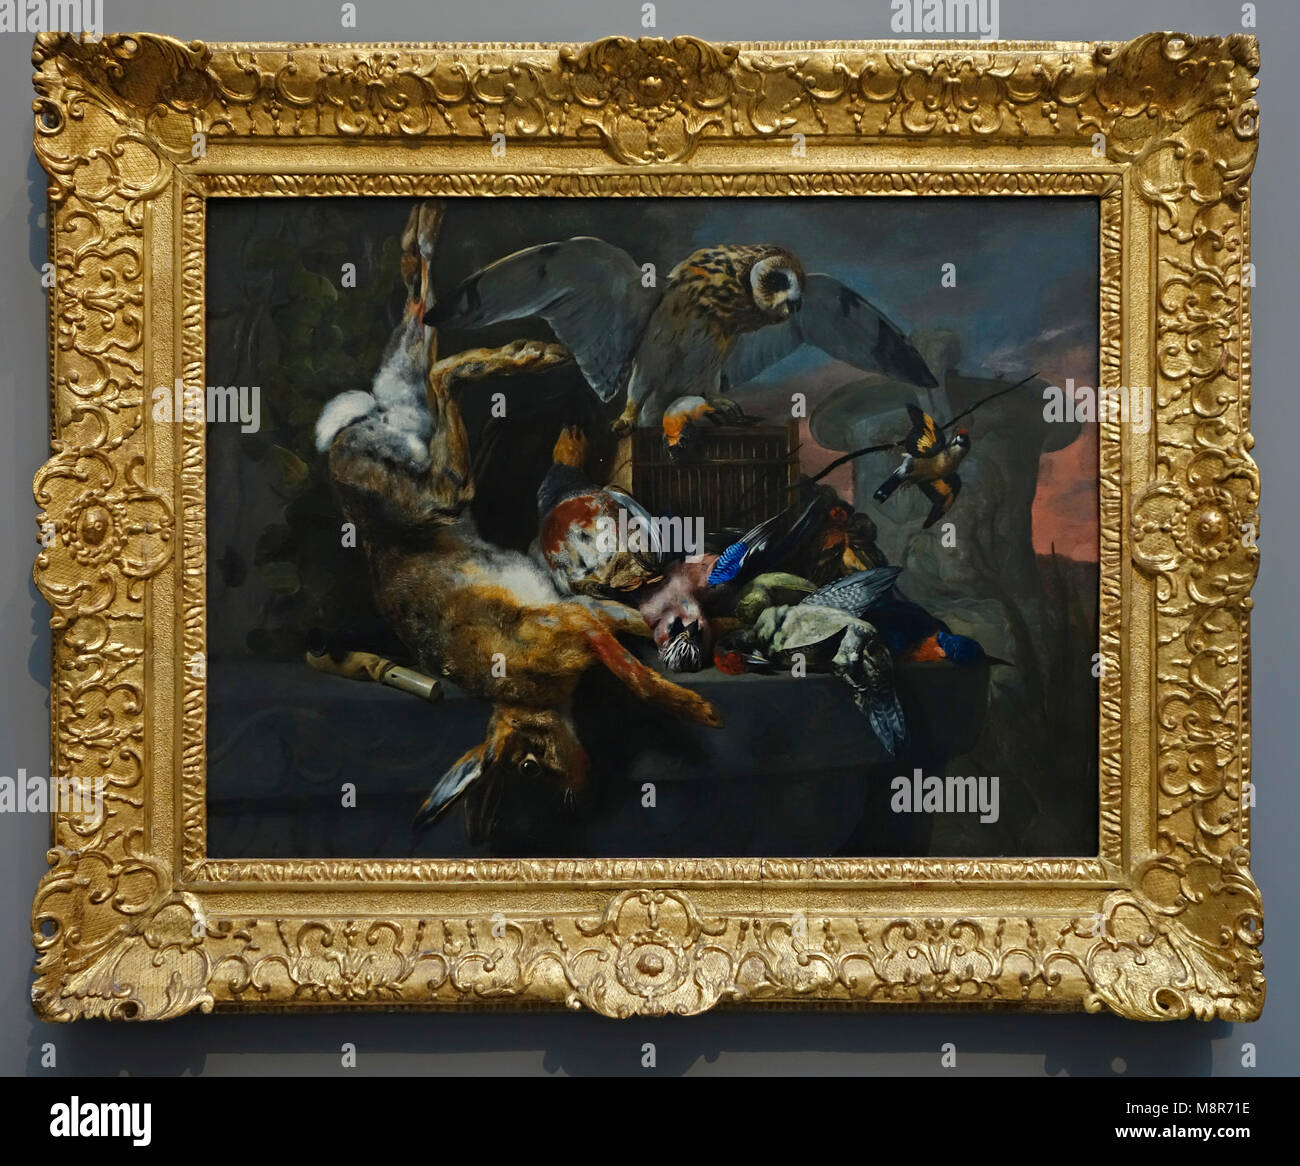 Ancora in vita con un gufo ed un trofeo di caccia, pittura ad olio su tela del XVII secolo dal pittore fiammingo Pieter Boel / Peeter Boel della scuola di Anversa Foto Stock